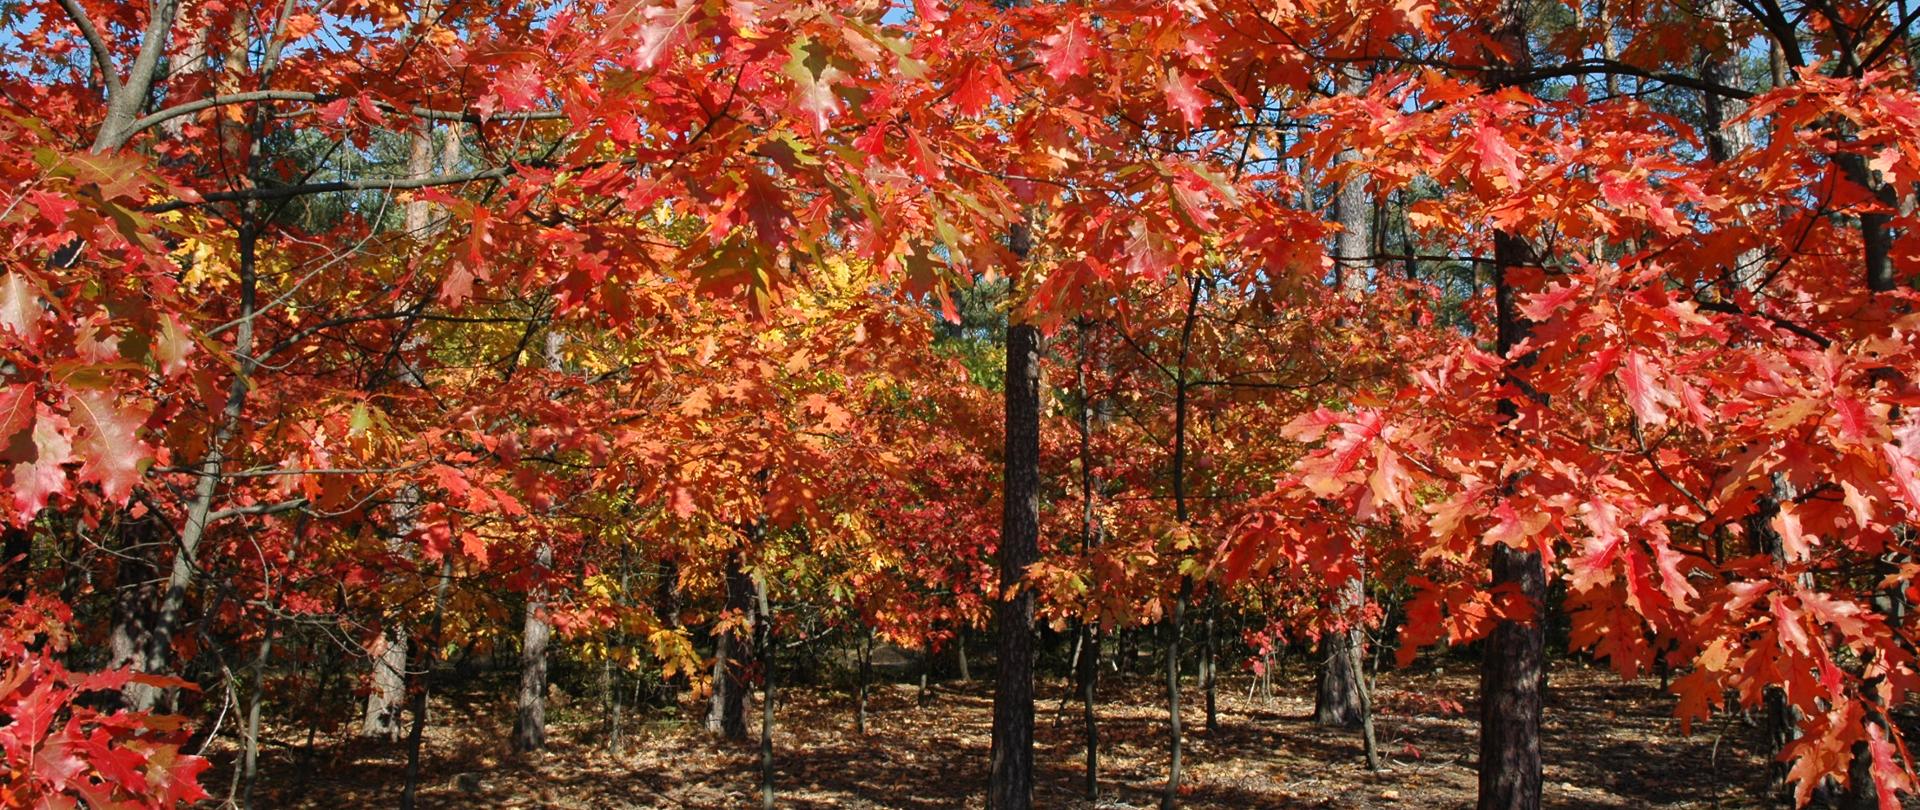 Na zdjeciu kilka drzew o czerwonych liściach jest to dąb czerwony. 